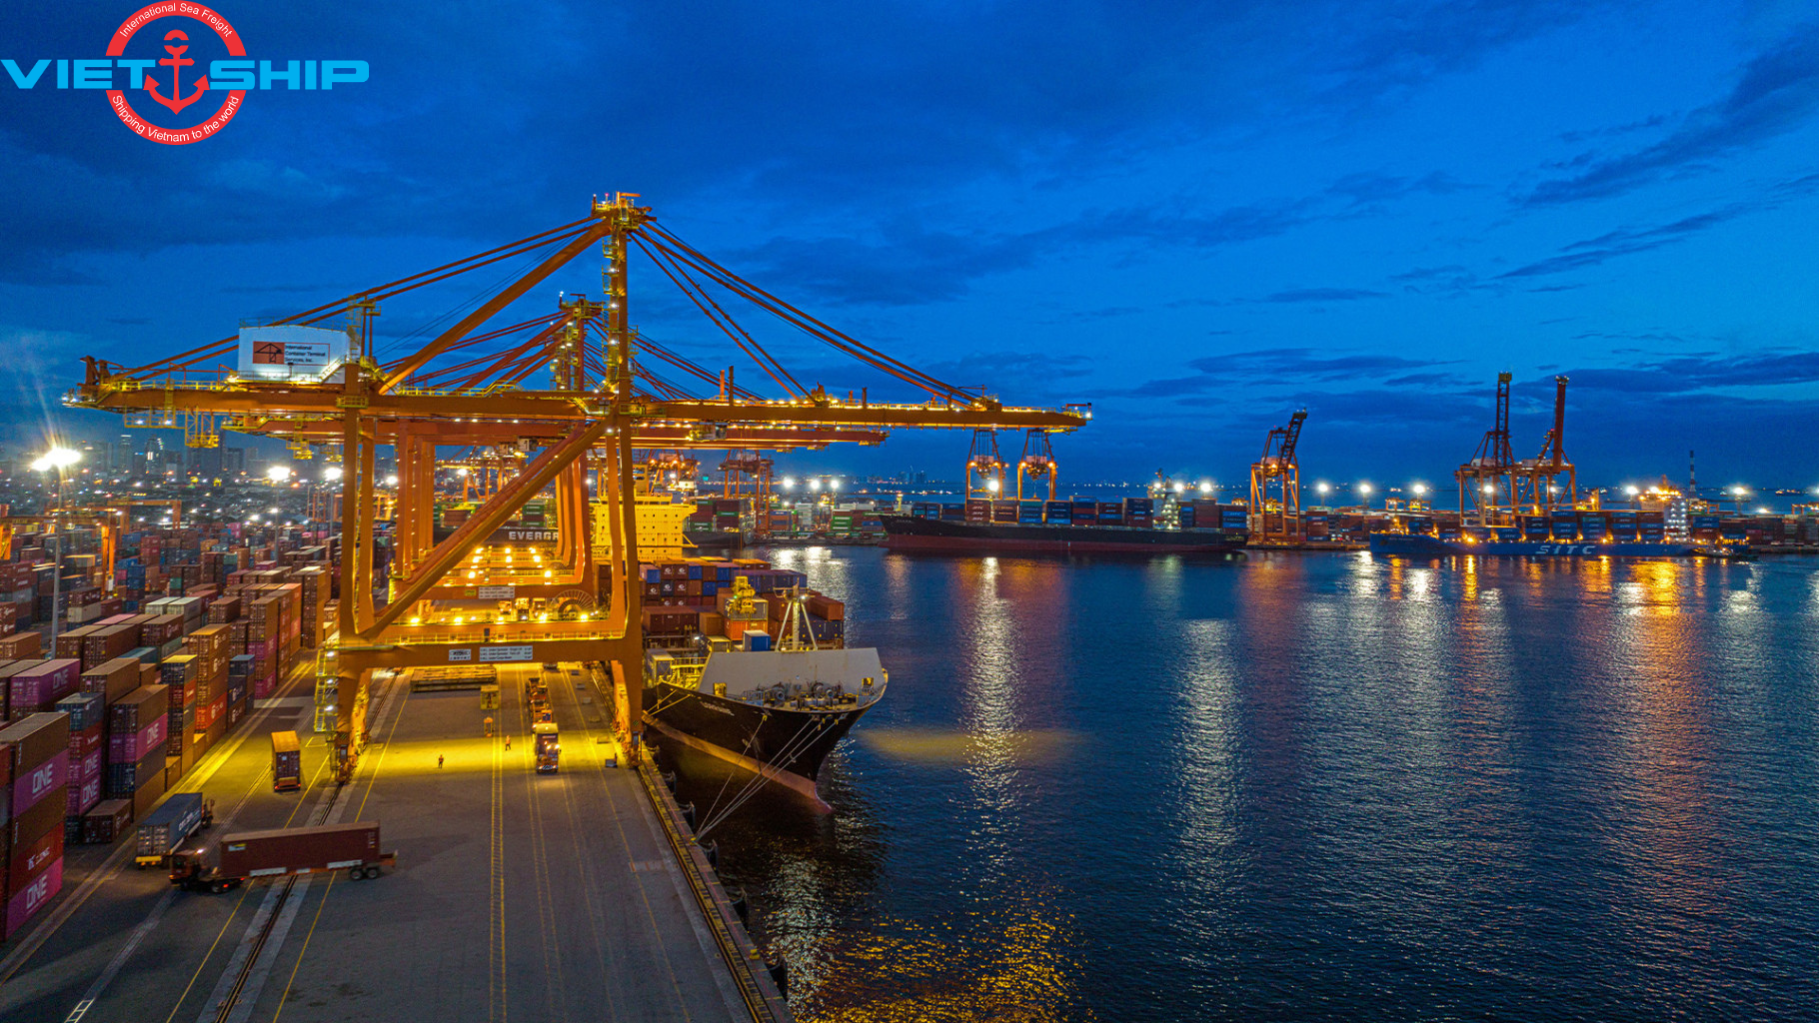 Cảng Visakhapatnam – Cửa ngõ giao thương quan trọng của Ấn Độ